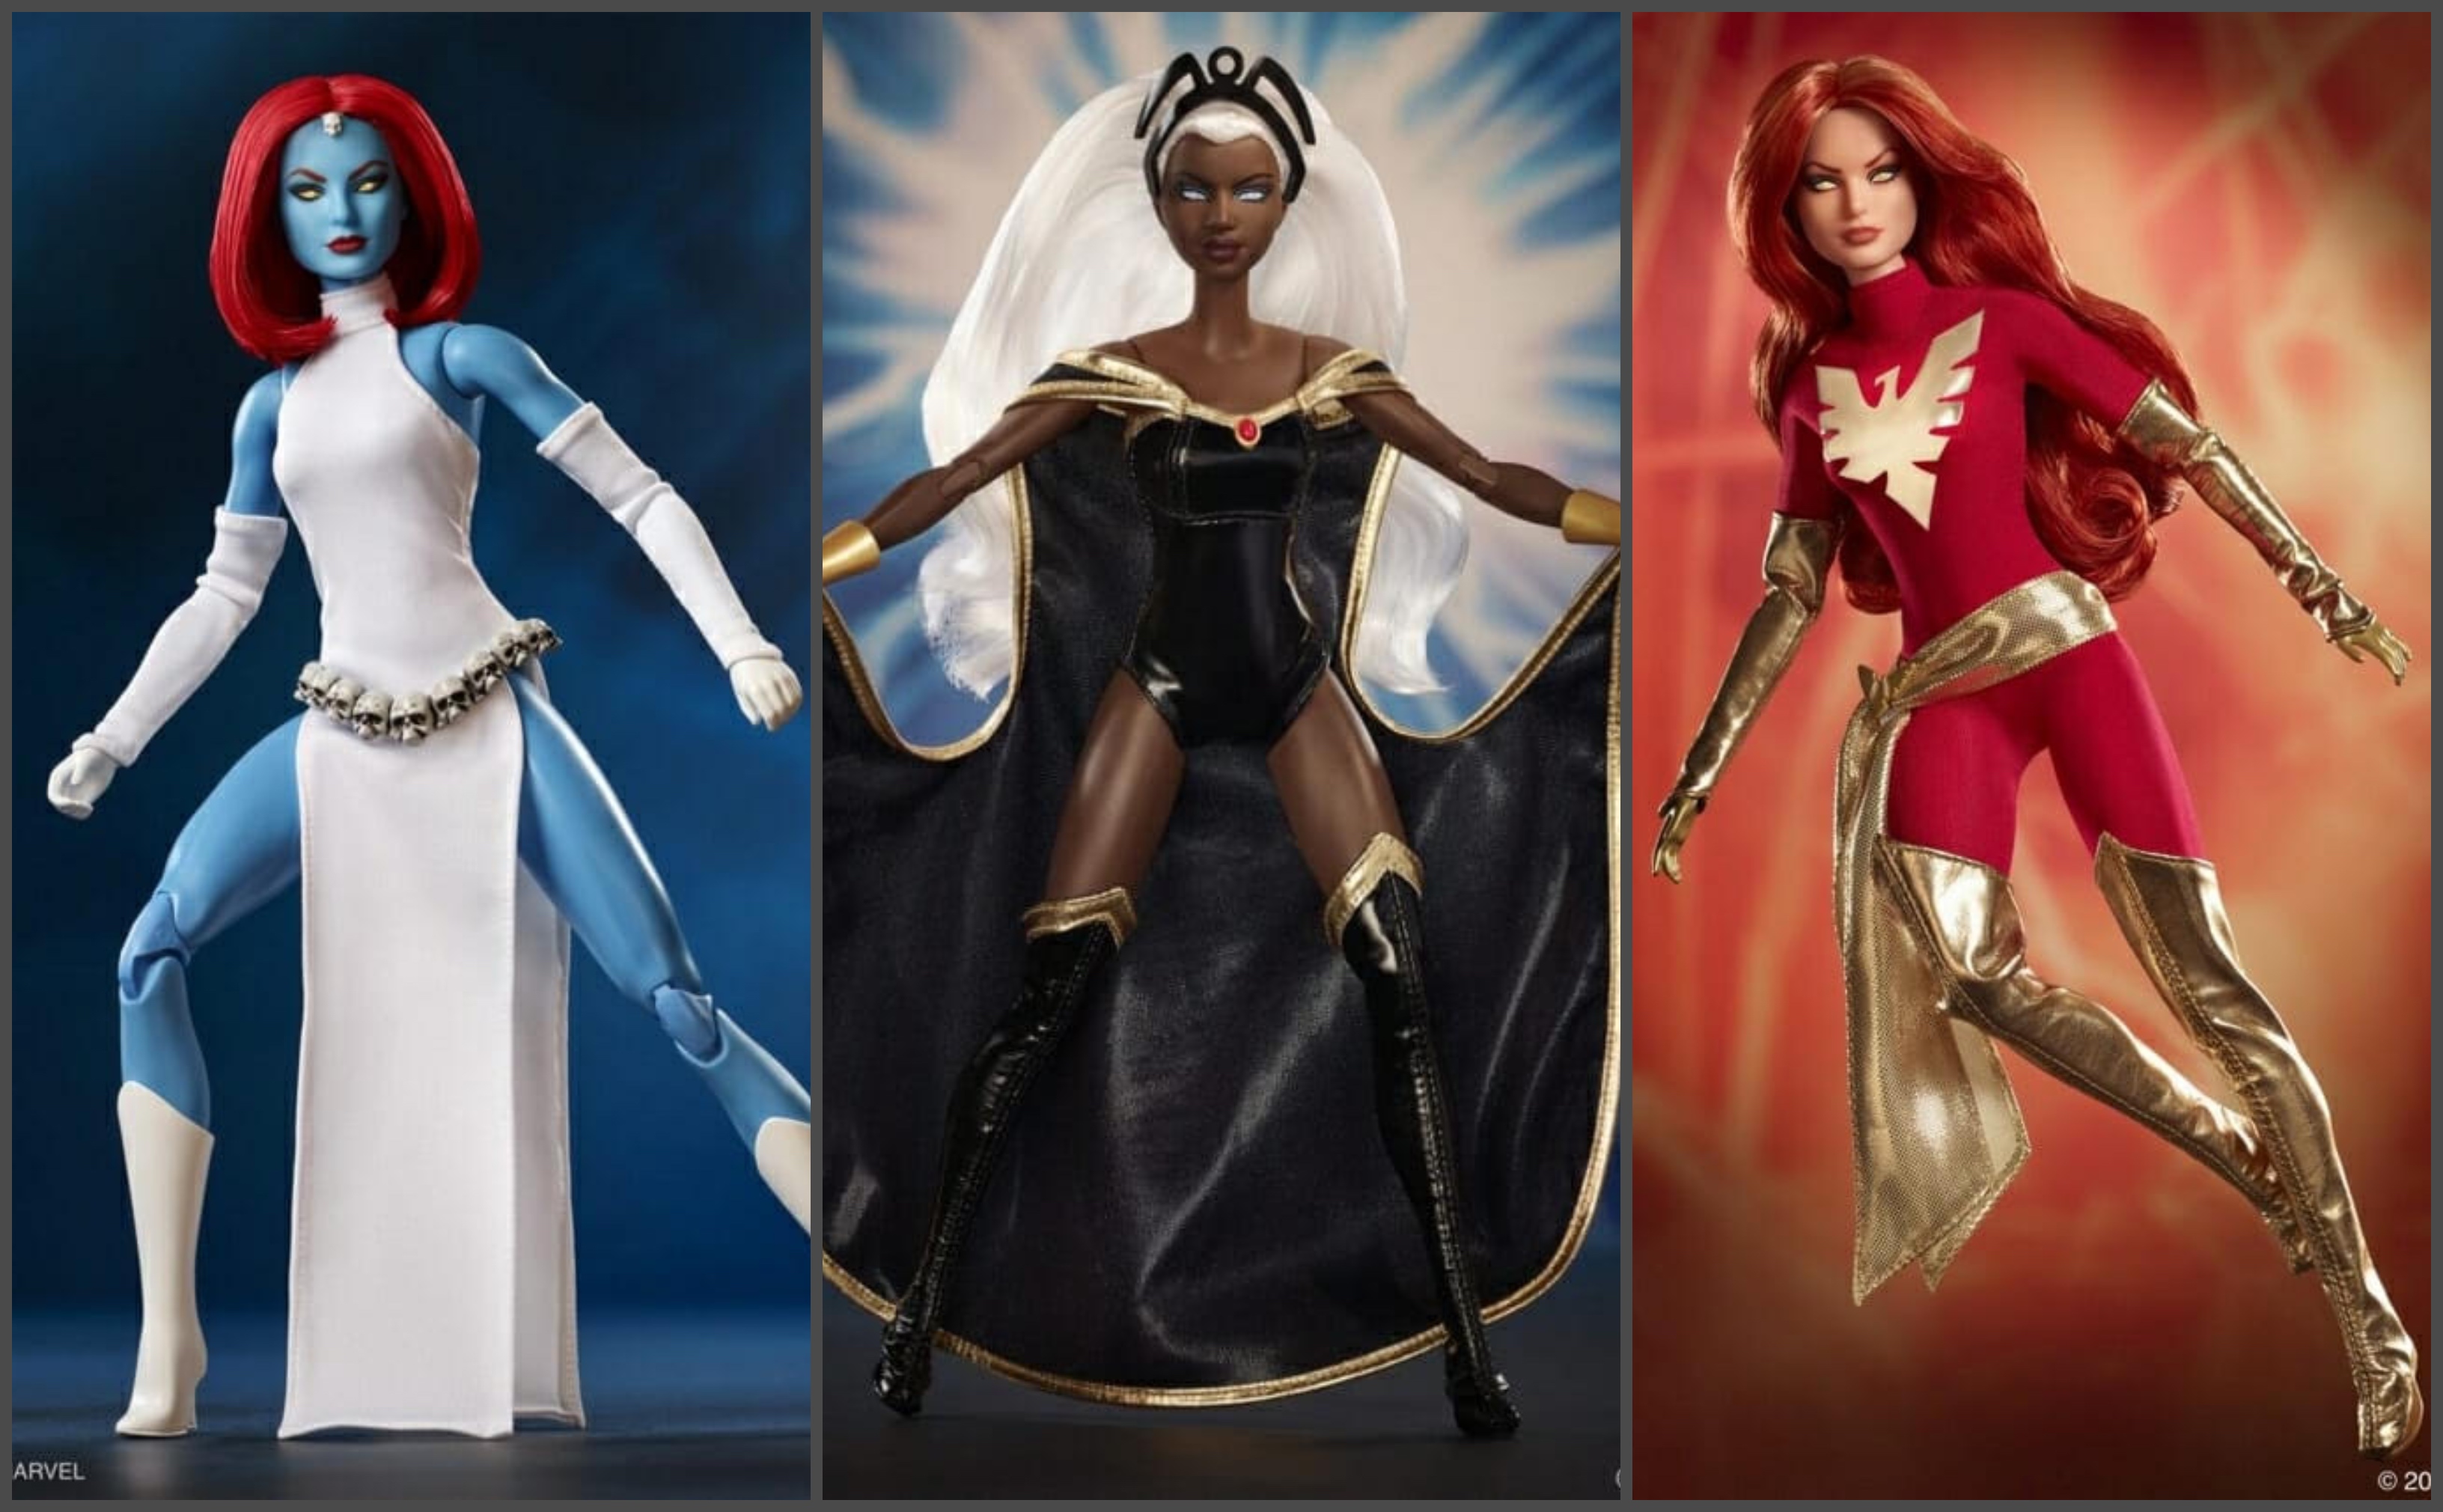 Marvel and Mattel Present X-Men Comics Barbie Dolls